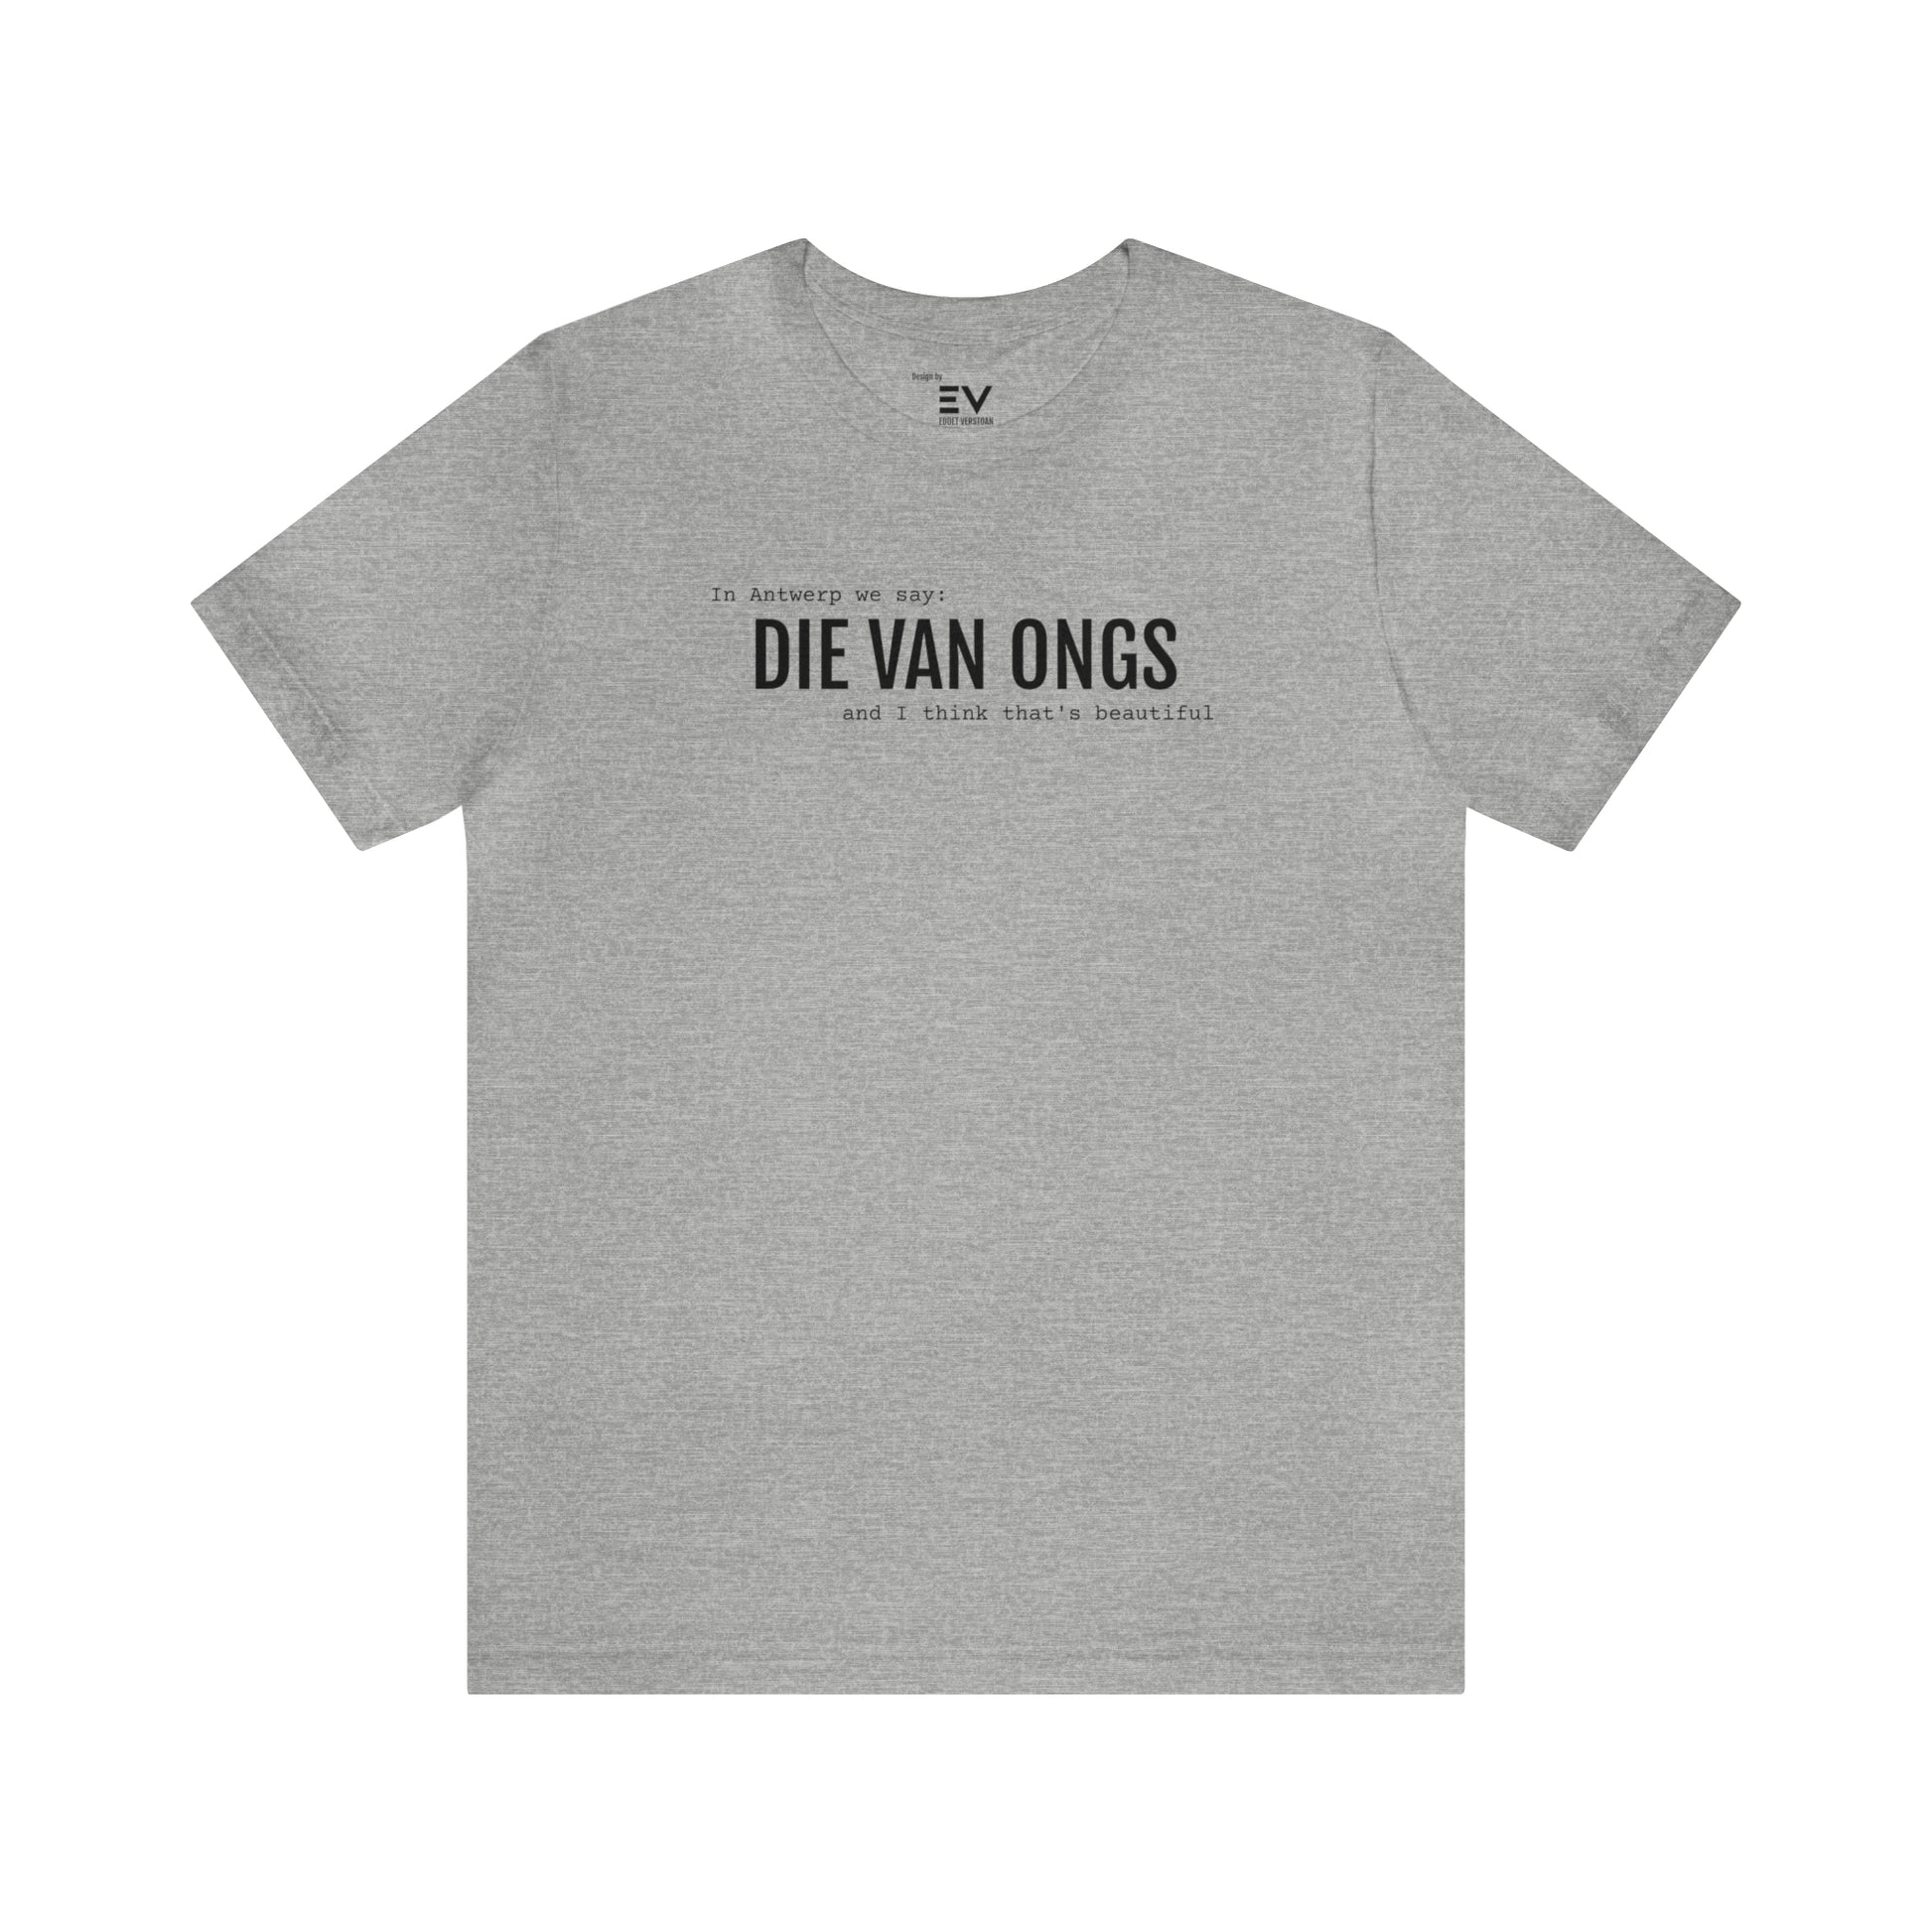 Grijs T-Shirt met 'Die van ongs' opschrift voor Antwerpse humo